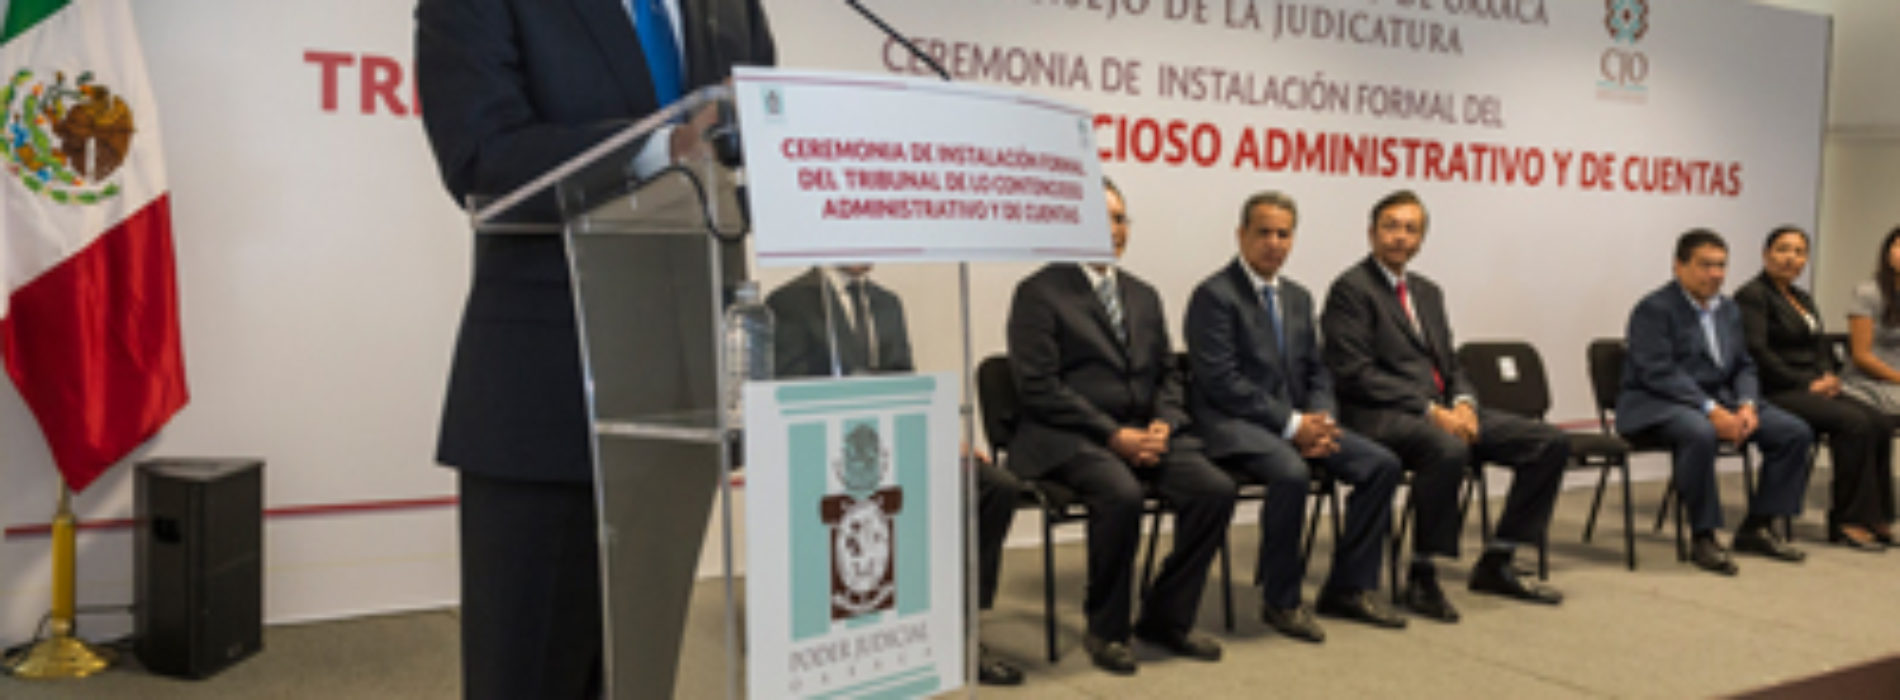 Abre Oaxaca una nueva etapa en la impartición de justicia y la cultura jurídica: Gabino Cué